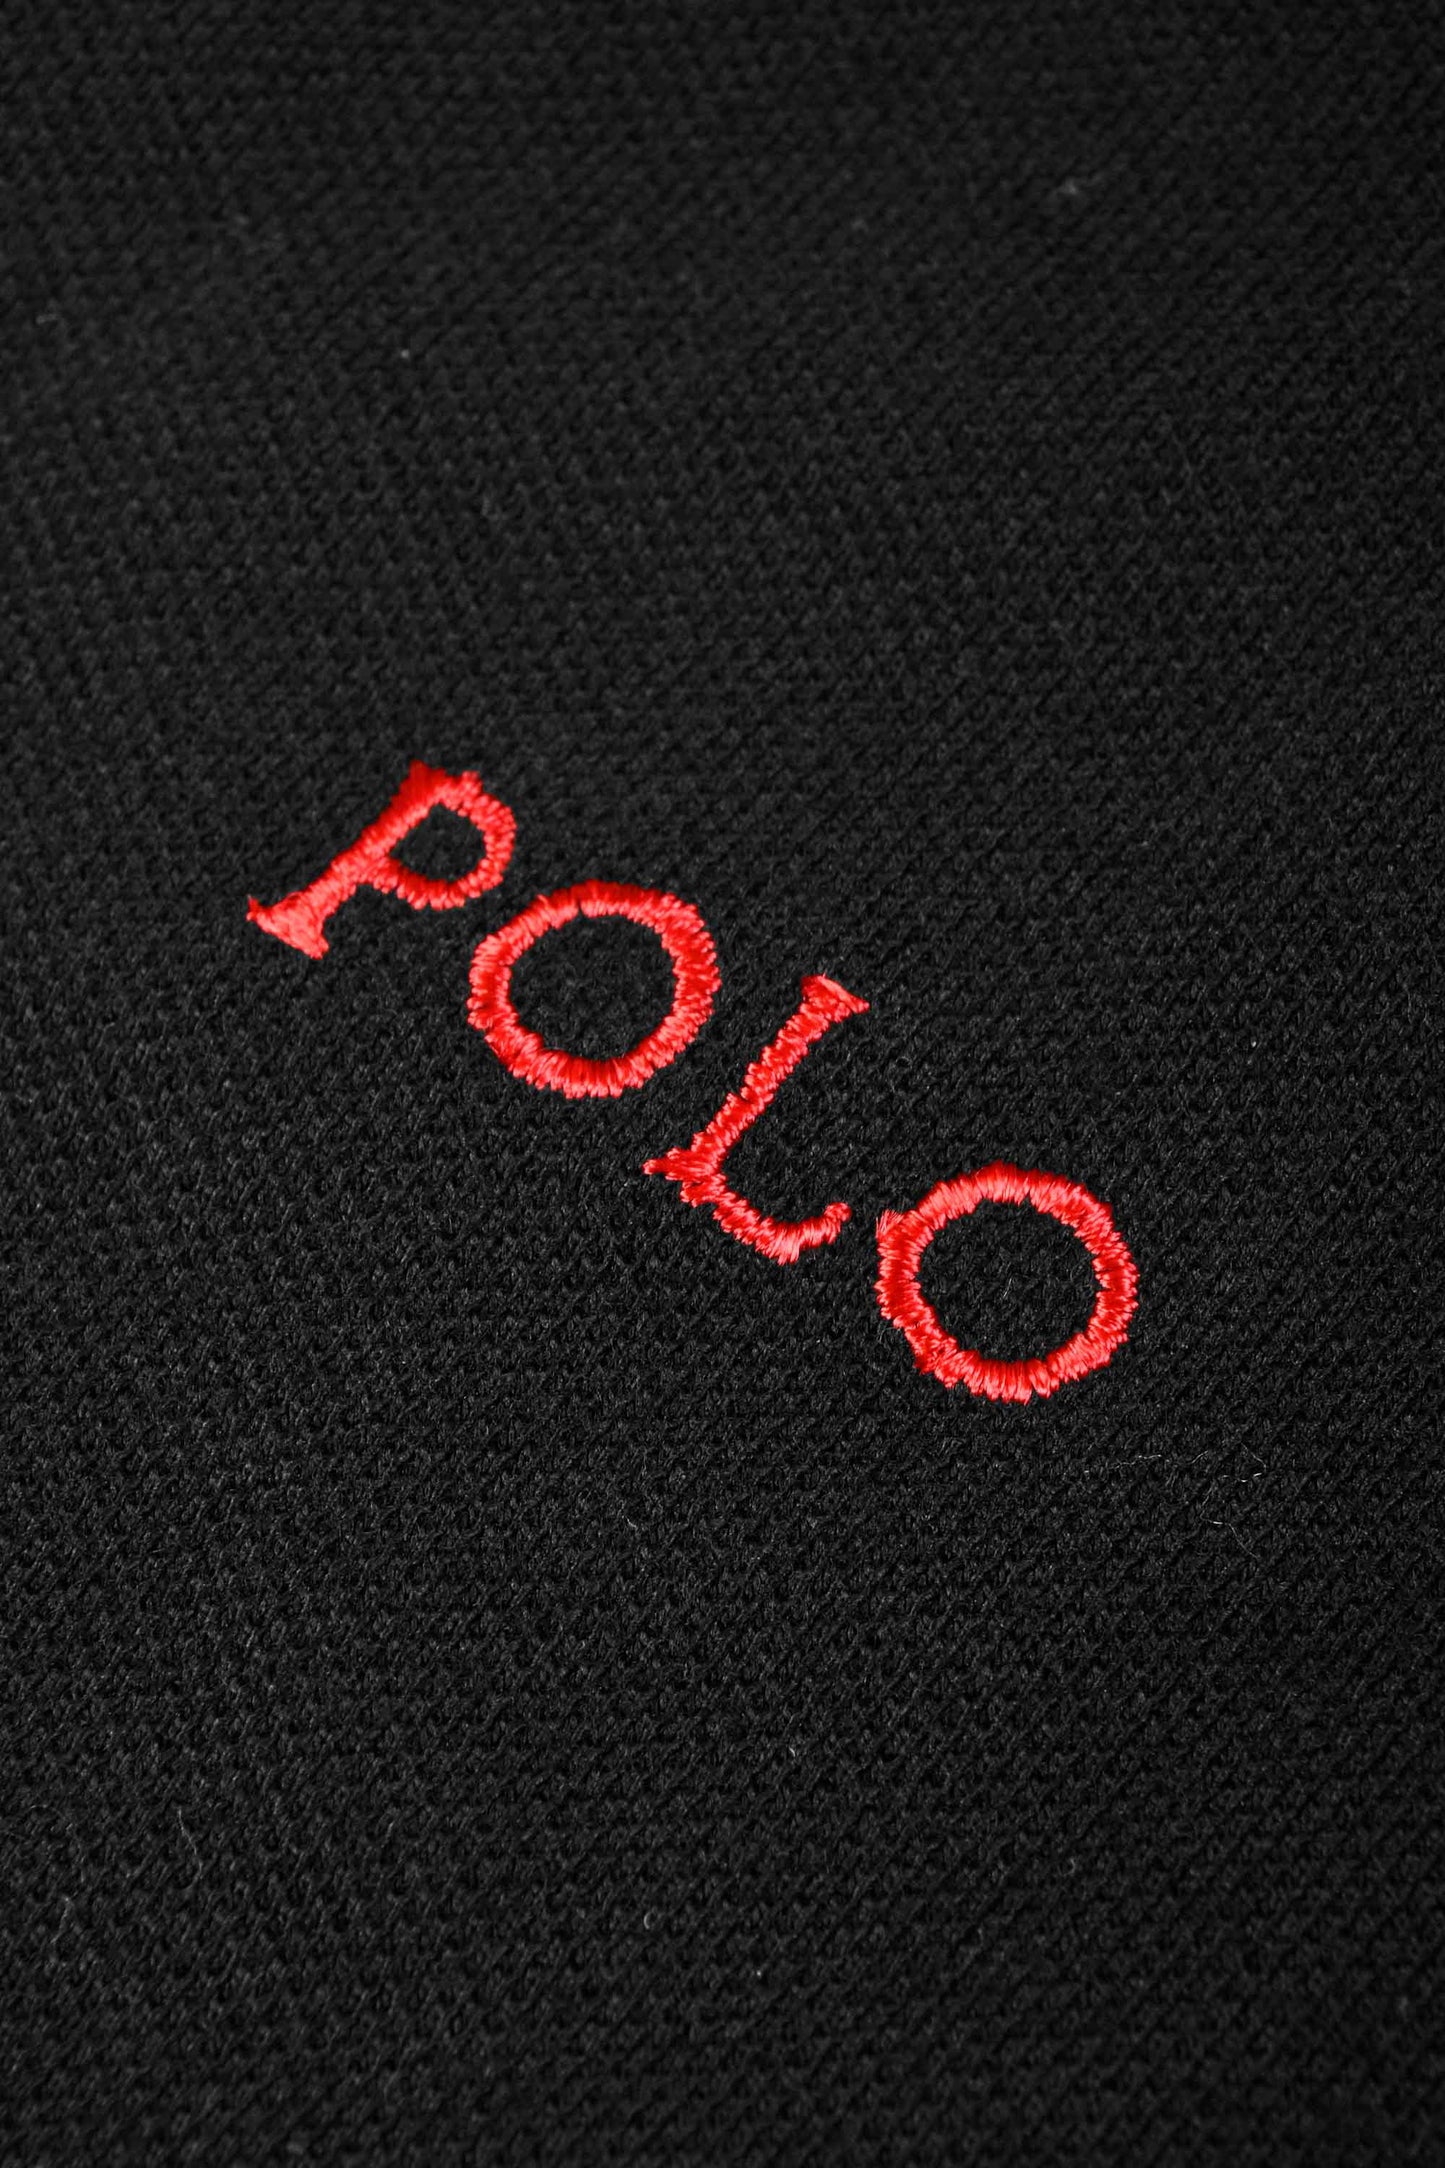 Polo Republica Men's USA & Polo Embroidered Short Sleeve Polo Shirt Men's Polo Shirt Polo Republica 